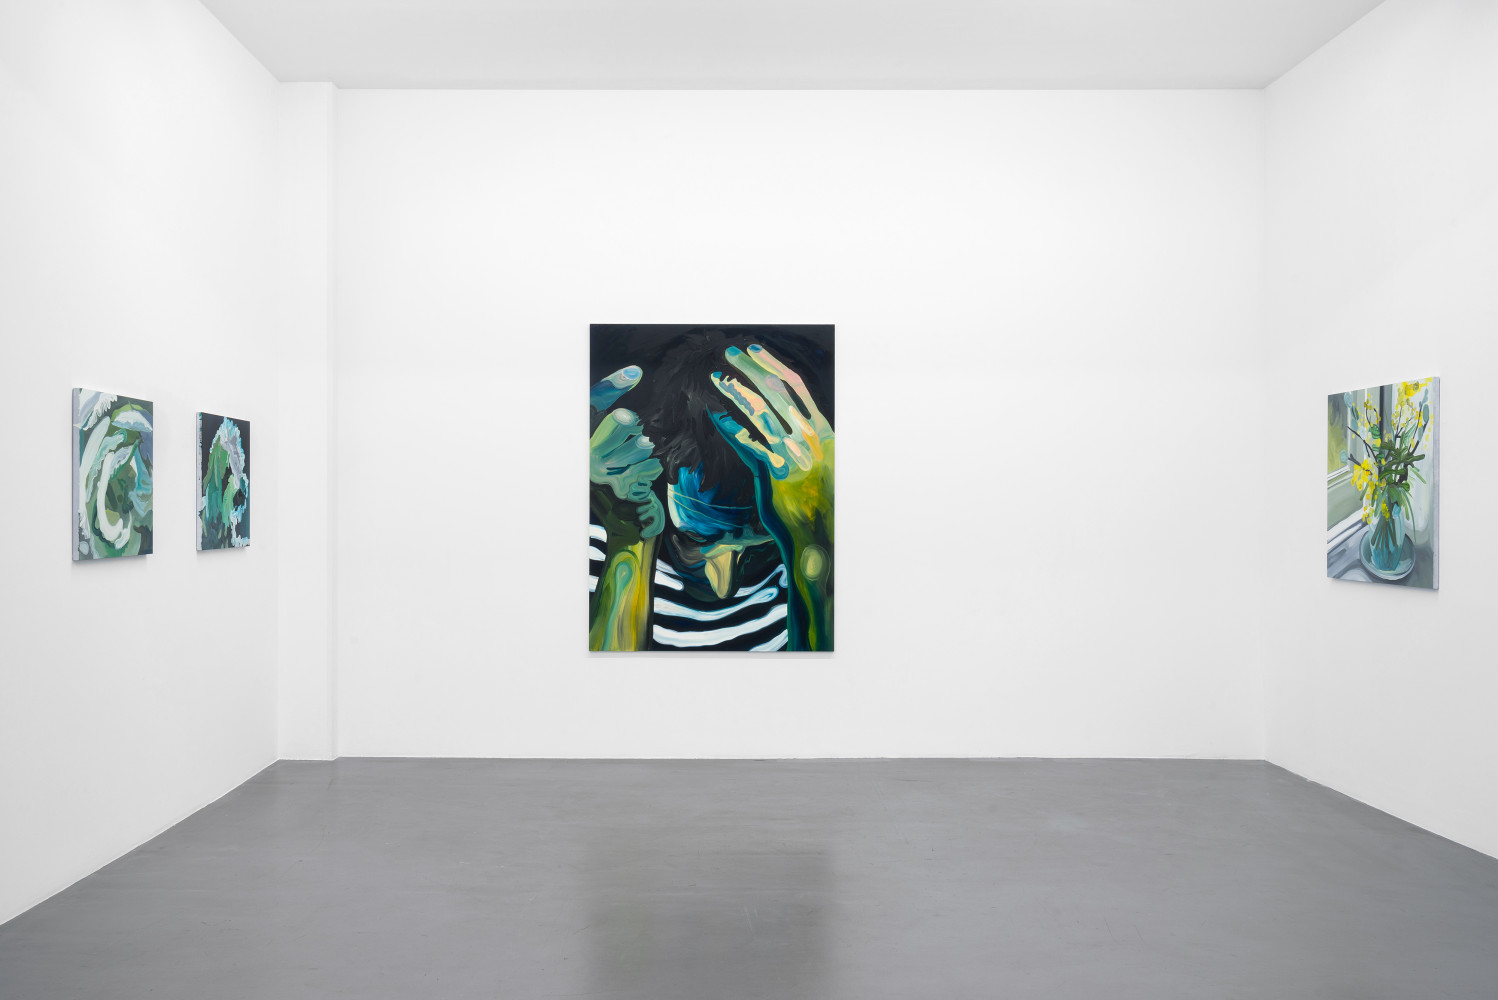 Clare Woods, ‘If Not Now Then When’, Installationsansicht, Buchmann Galerie, 2020